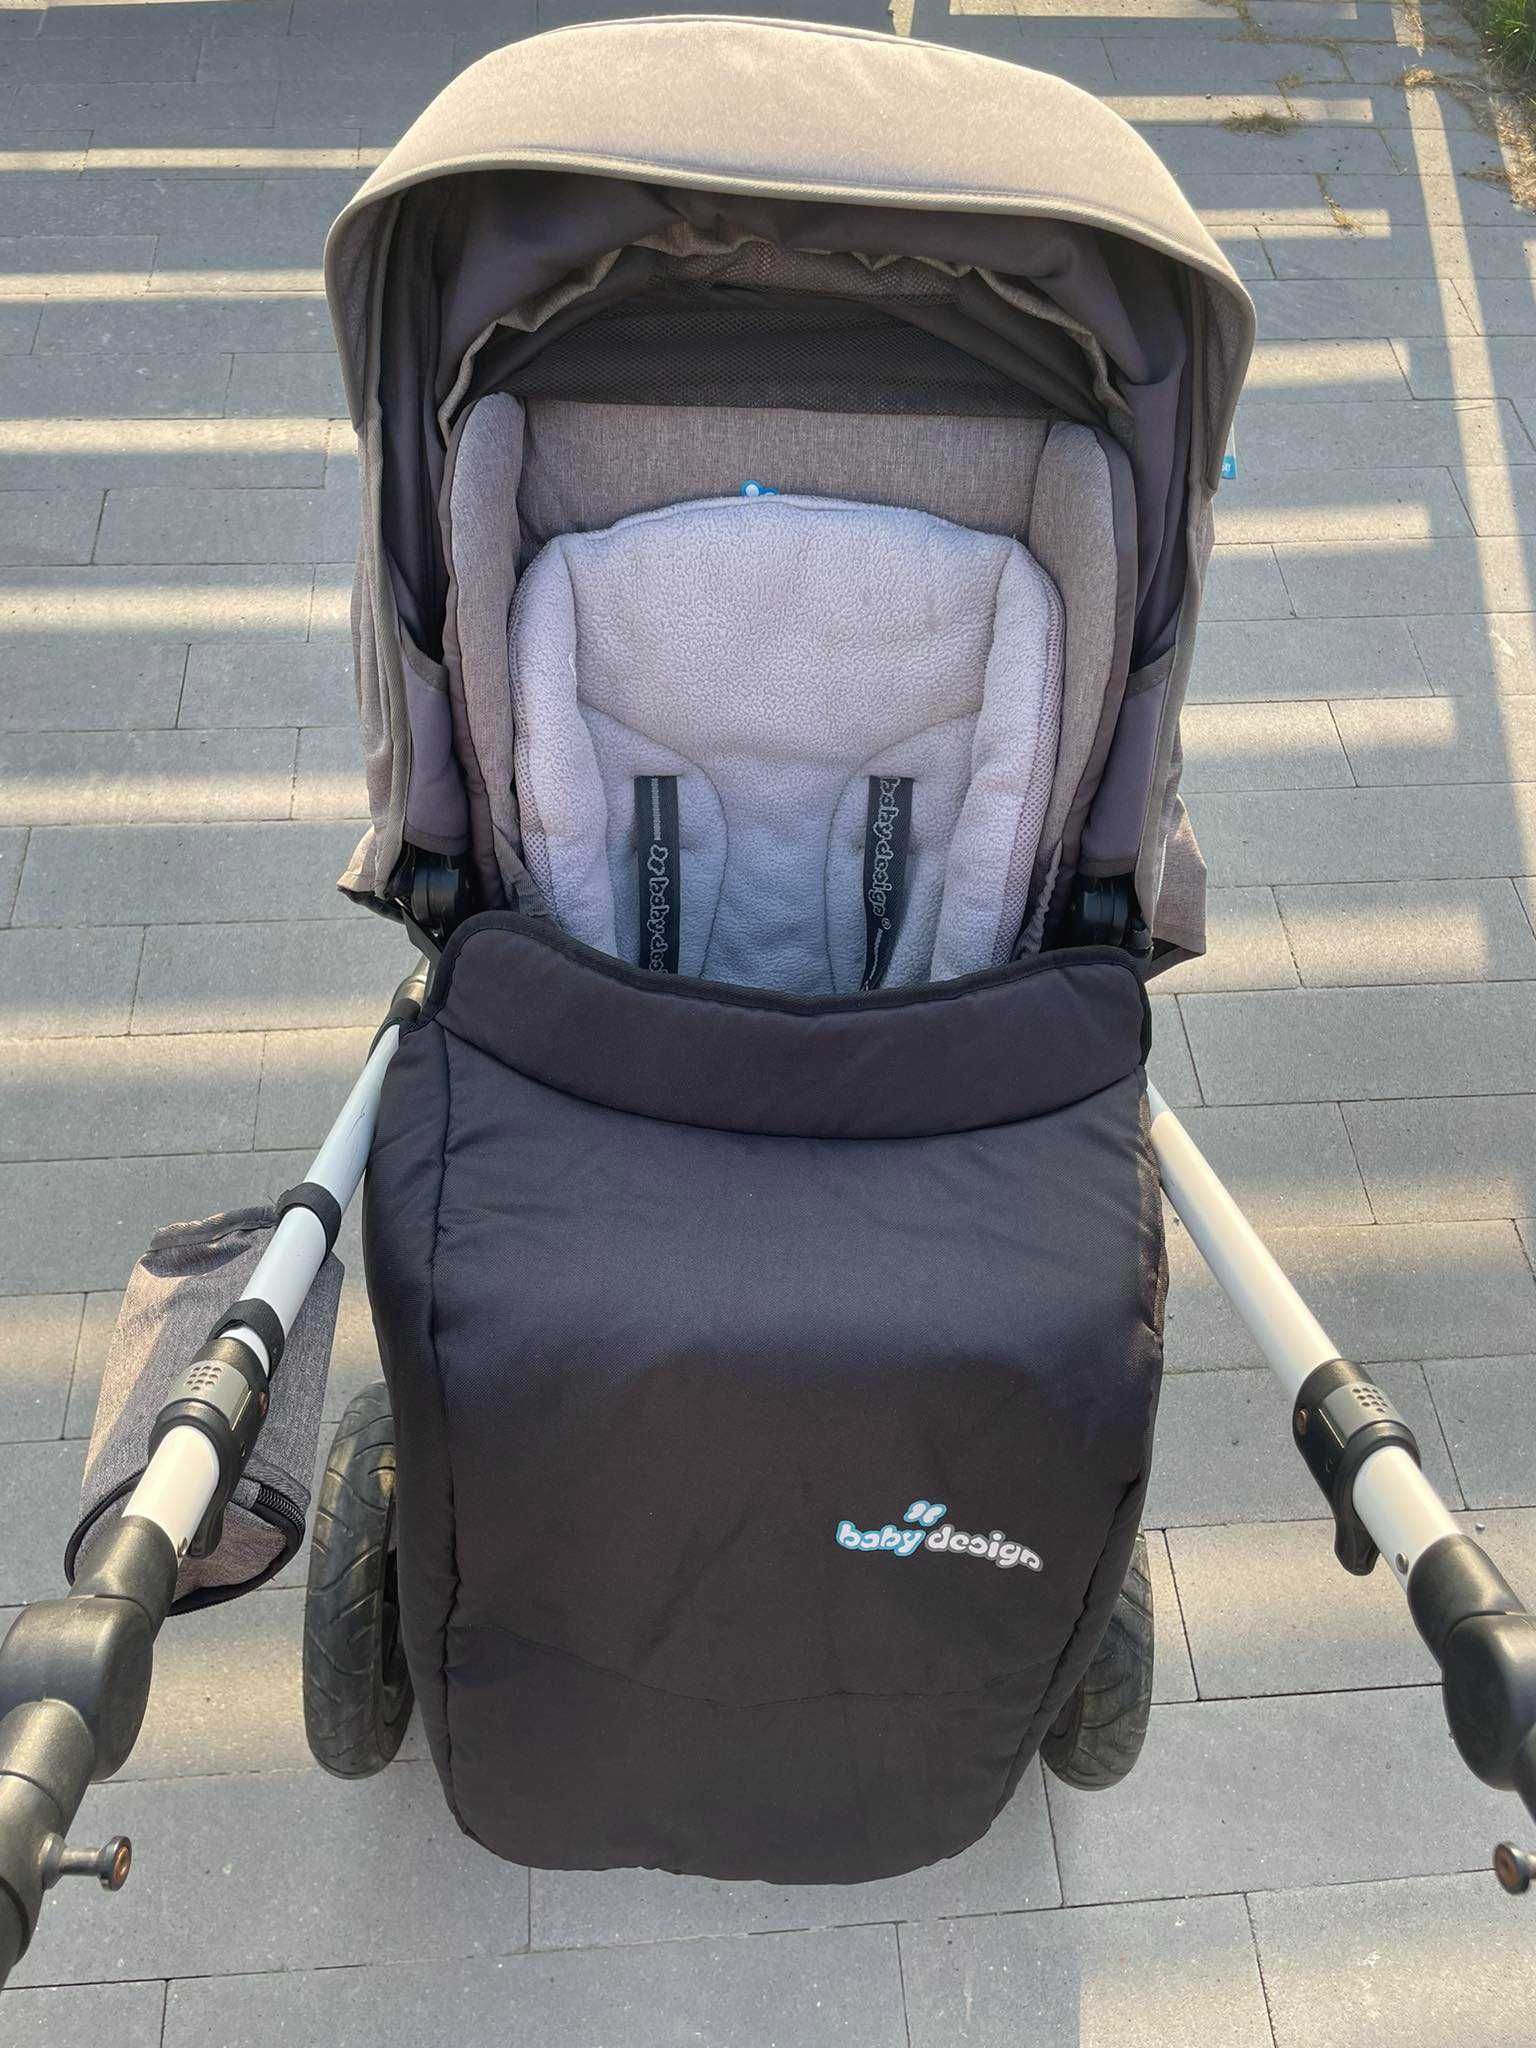 Sprzedam wózek spacerowy baby design husky